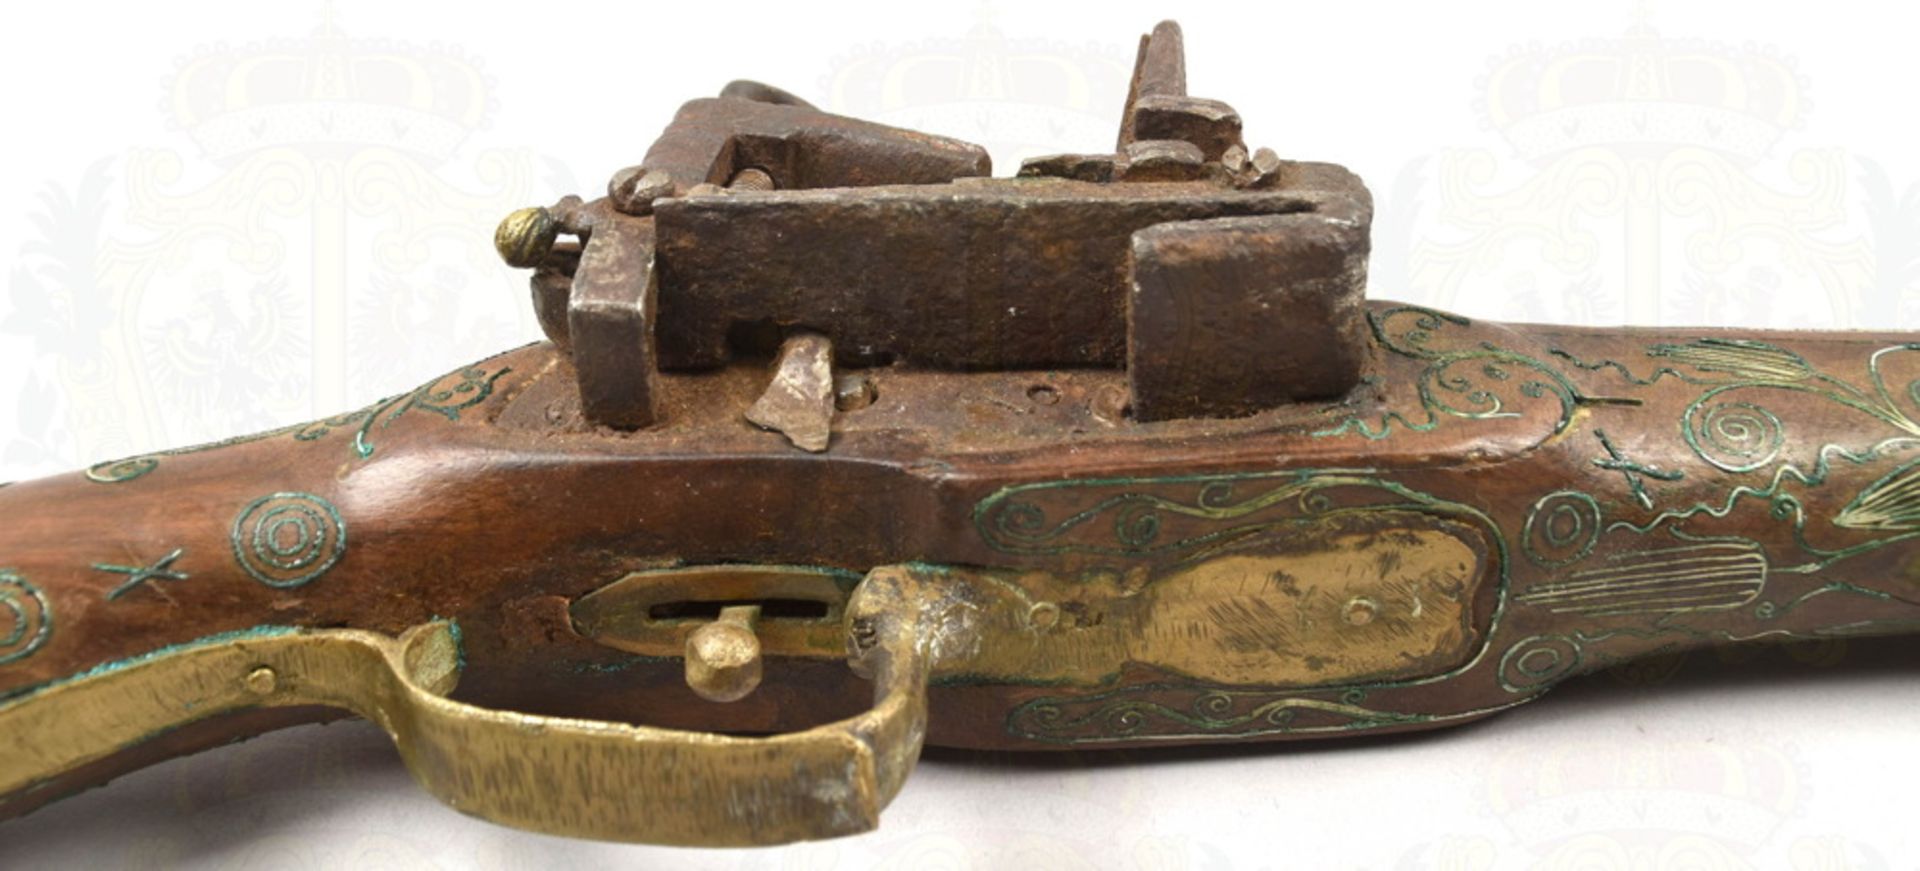 Luxury flintlock rifle about 1860 - Image 4 of 5